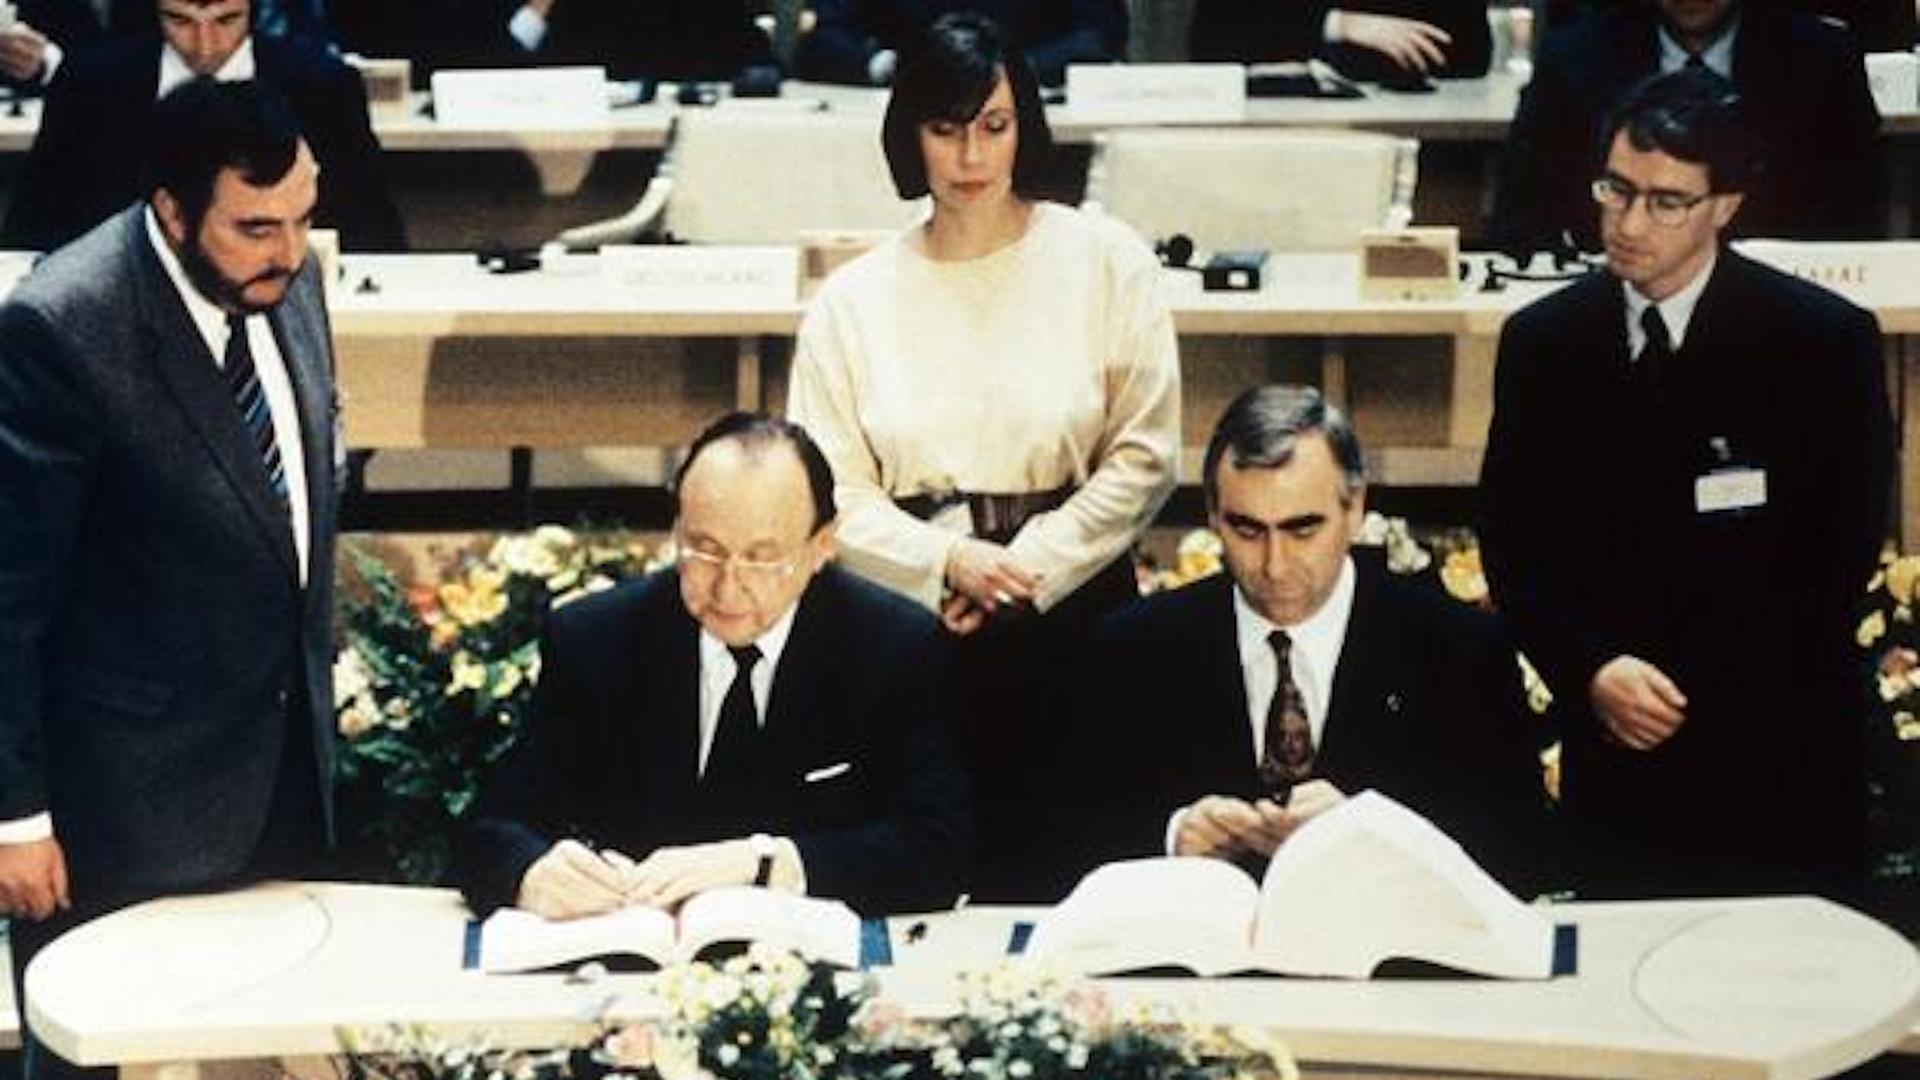 Bundesaußenminister Hans-Dietrich Genscher (l.) und Bundesfinanzminster Theo Waigel (r.) unterzeichnen am 7. Februar 1992 den Vertrag zur Wirtschafts- und Währungsunion der Europäischen Gemeinschaft in Maastricht (Niederlande).